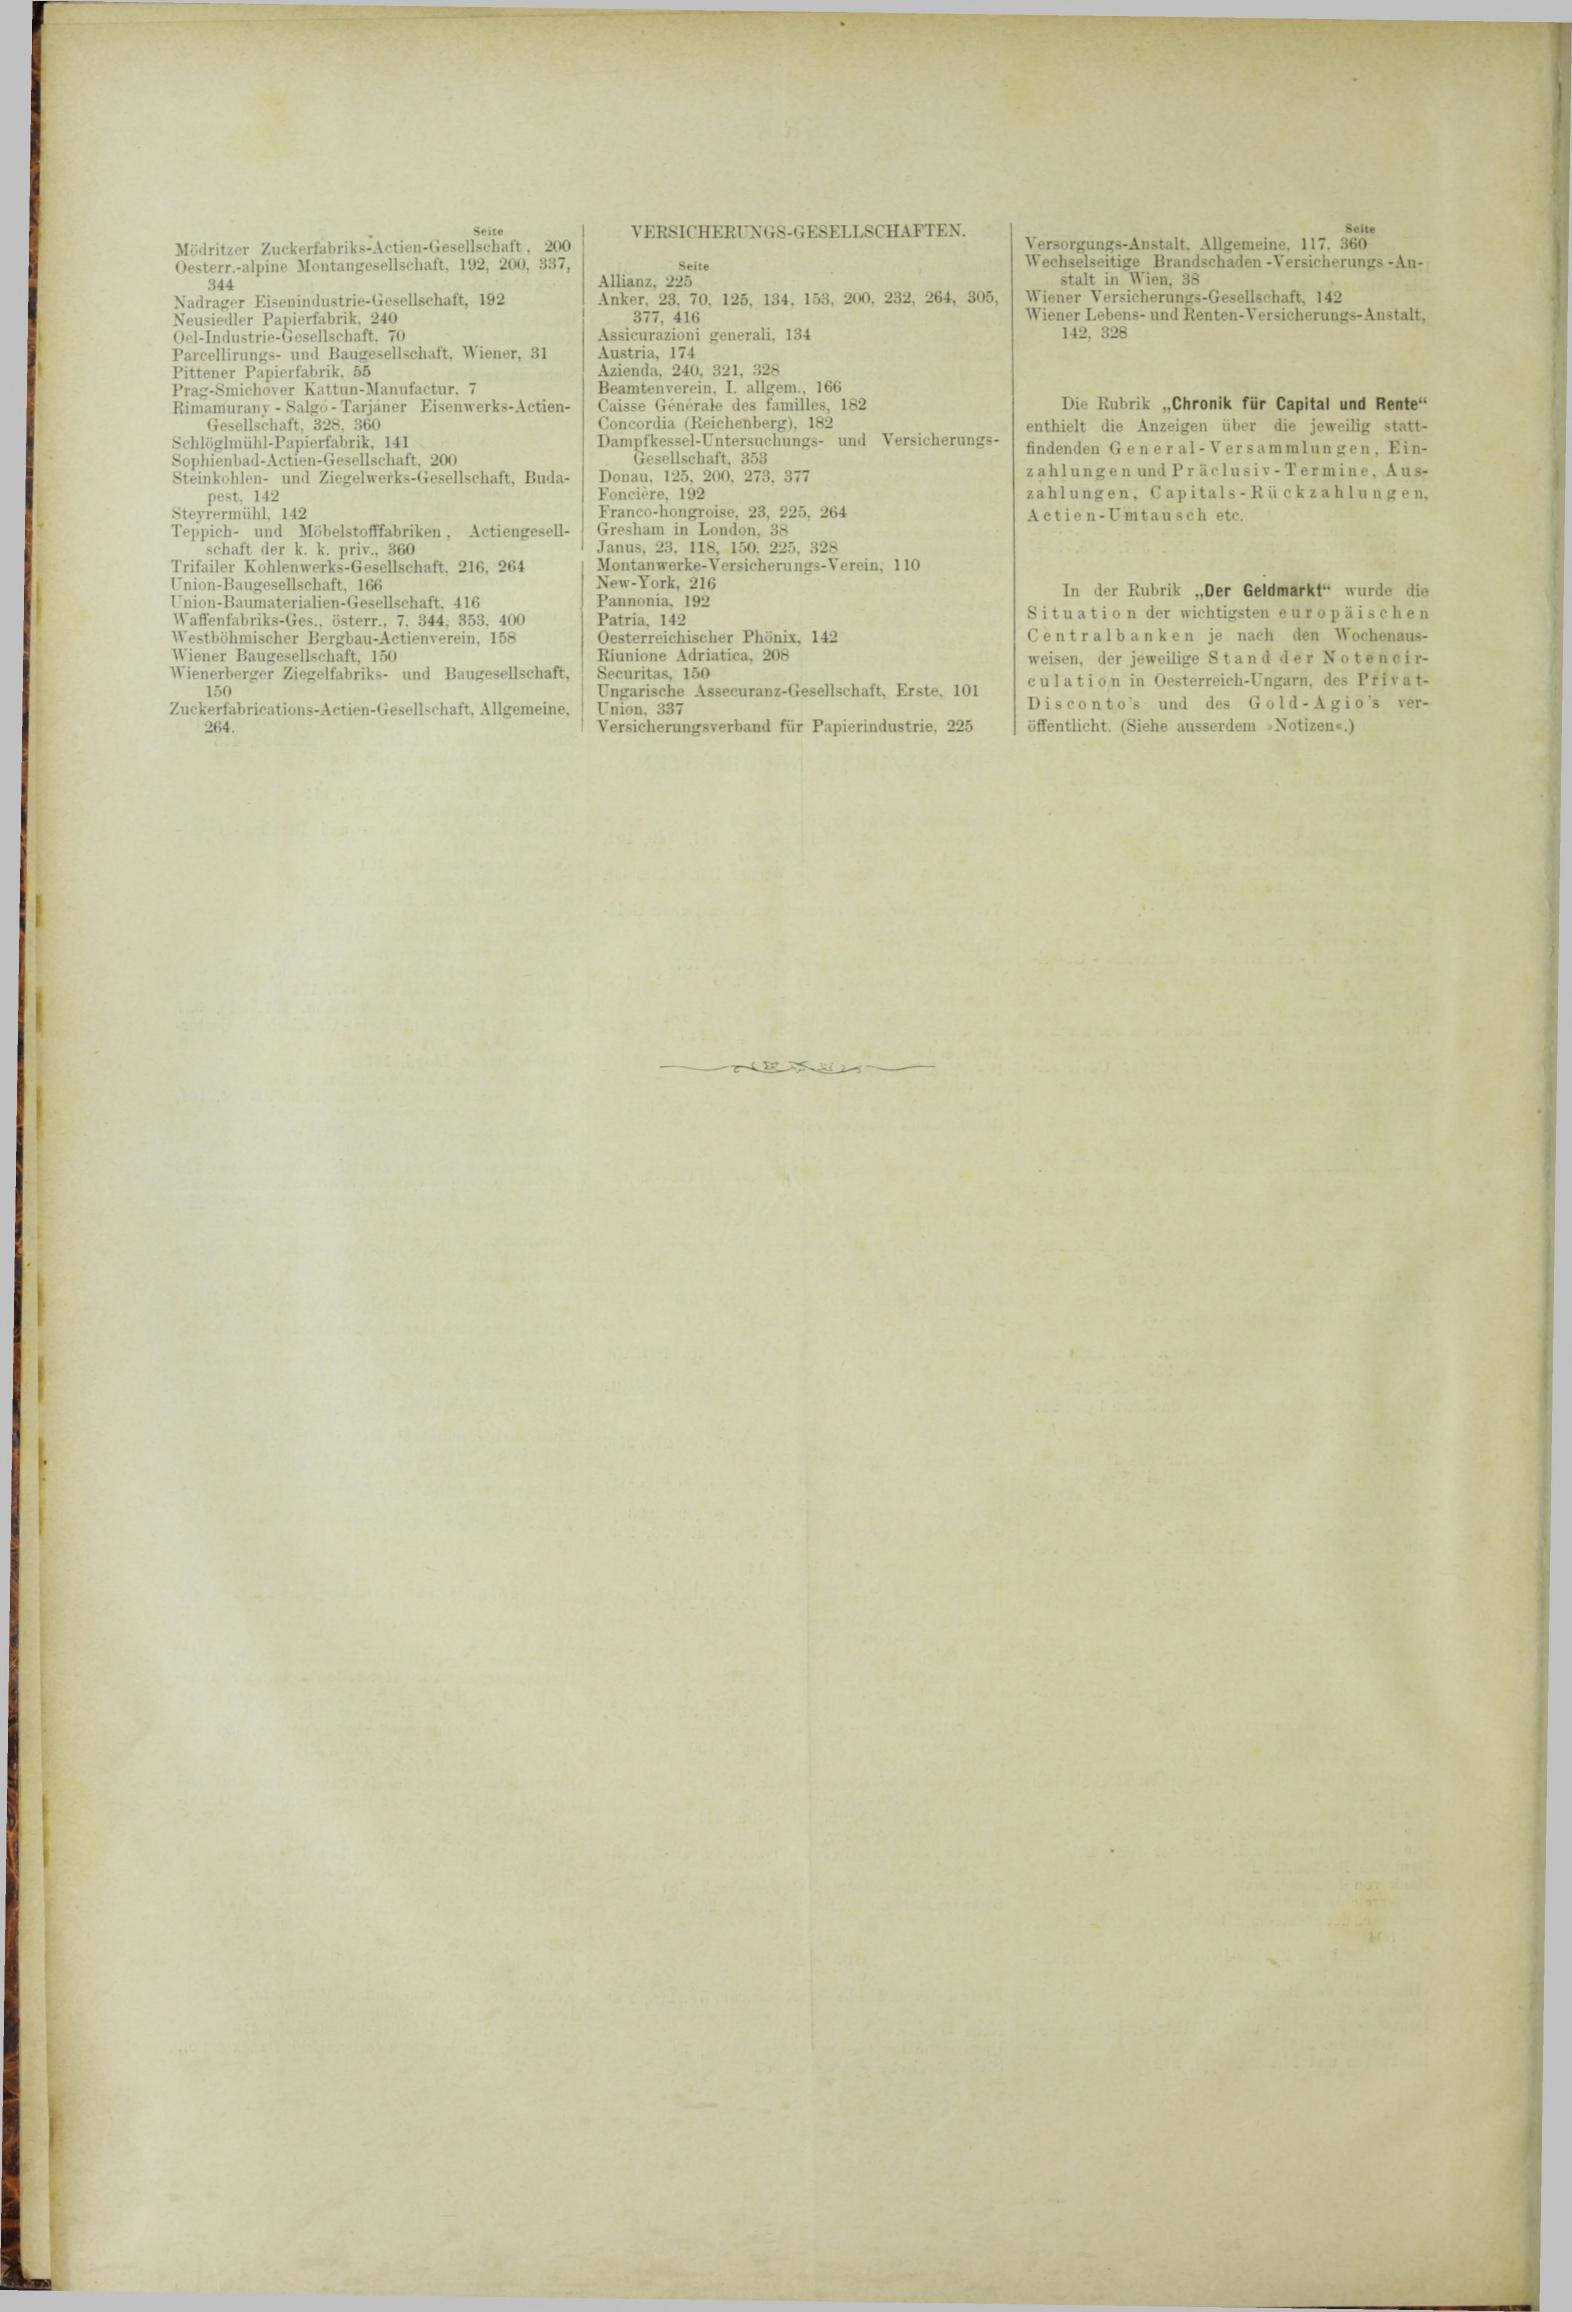 Der Tresor 25.10.1883 - Seite 12